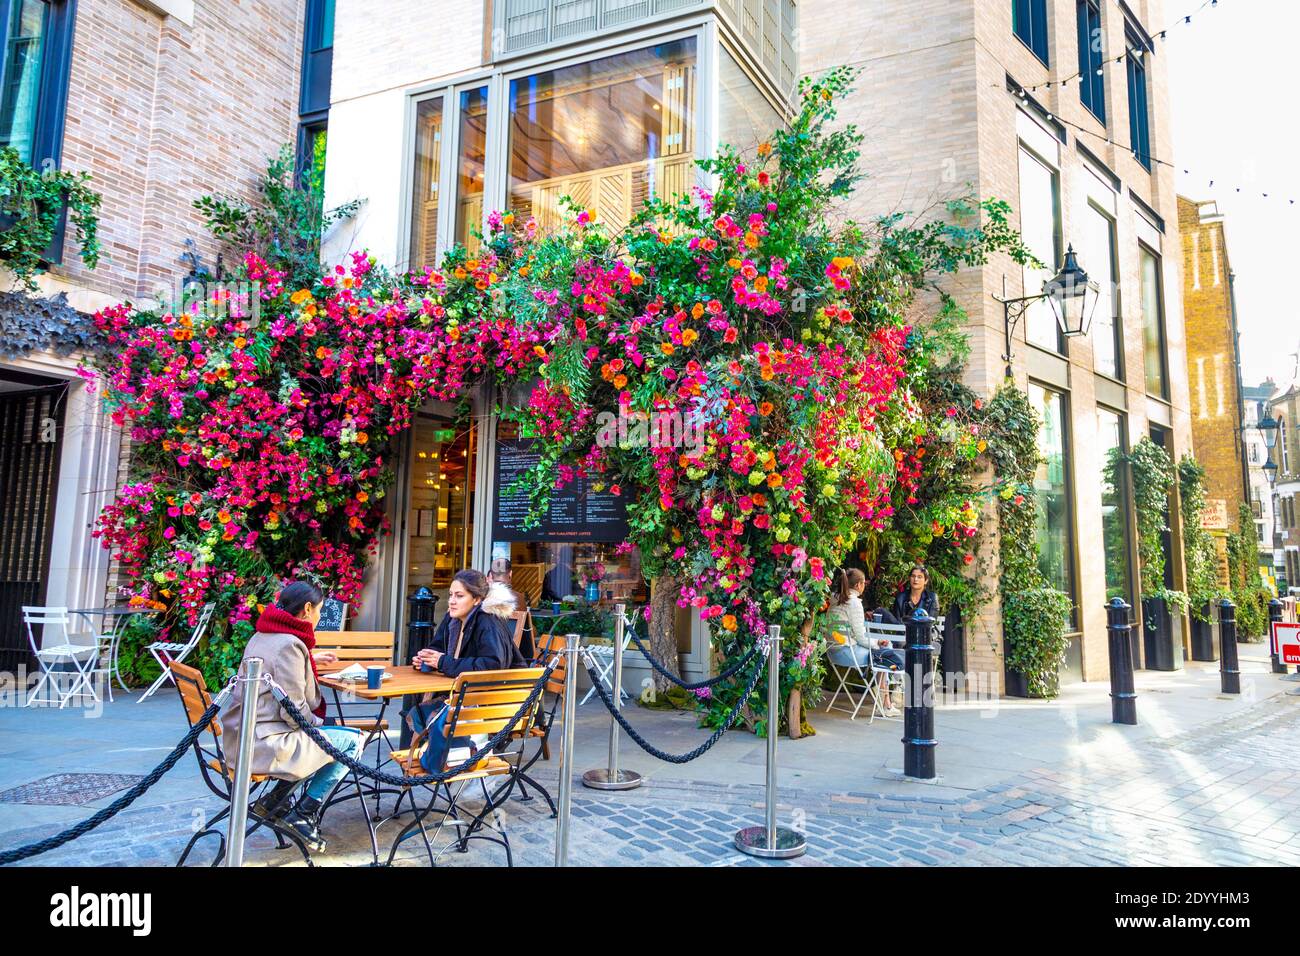 Esterno della Casa del caffè Floral Street decorata con fiori colorati, persone che hanno caffè all'aperto, Giardino Covernt, Londra, Regno Unito Foto Stock